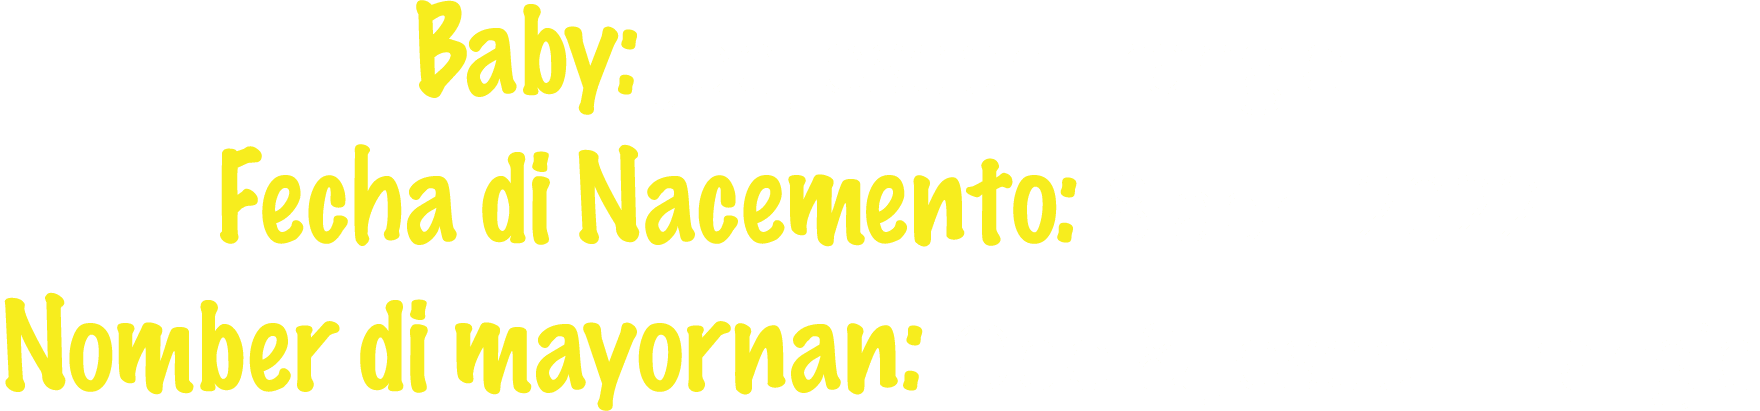 Baby: Joe Joseph Frangie Fecha di Nacemento: 8 april 2022 Nomber di mayornan: Odo & Joseph Frangie 